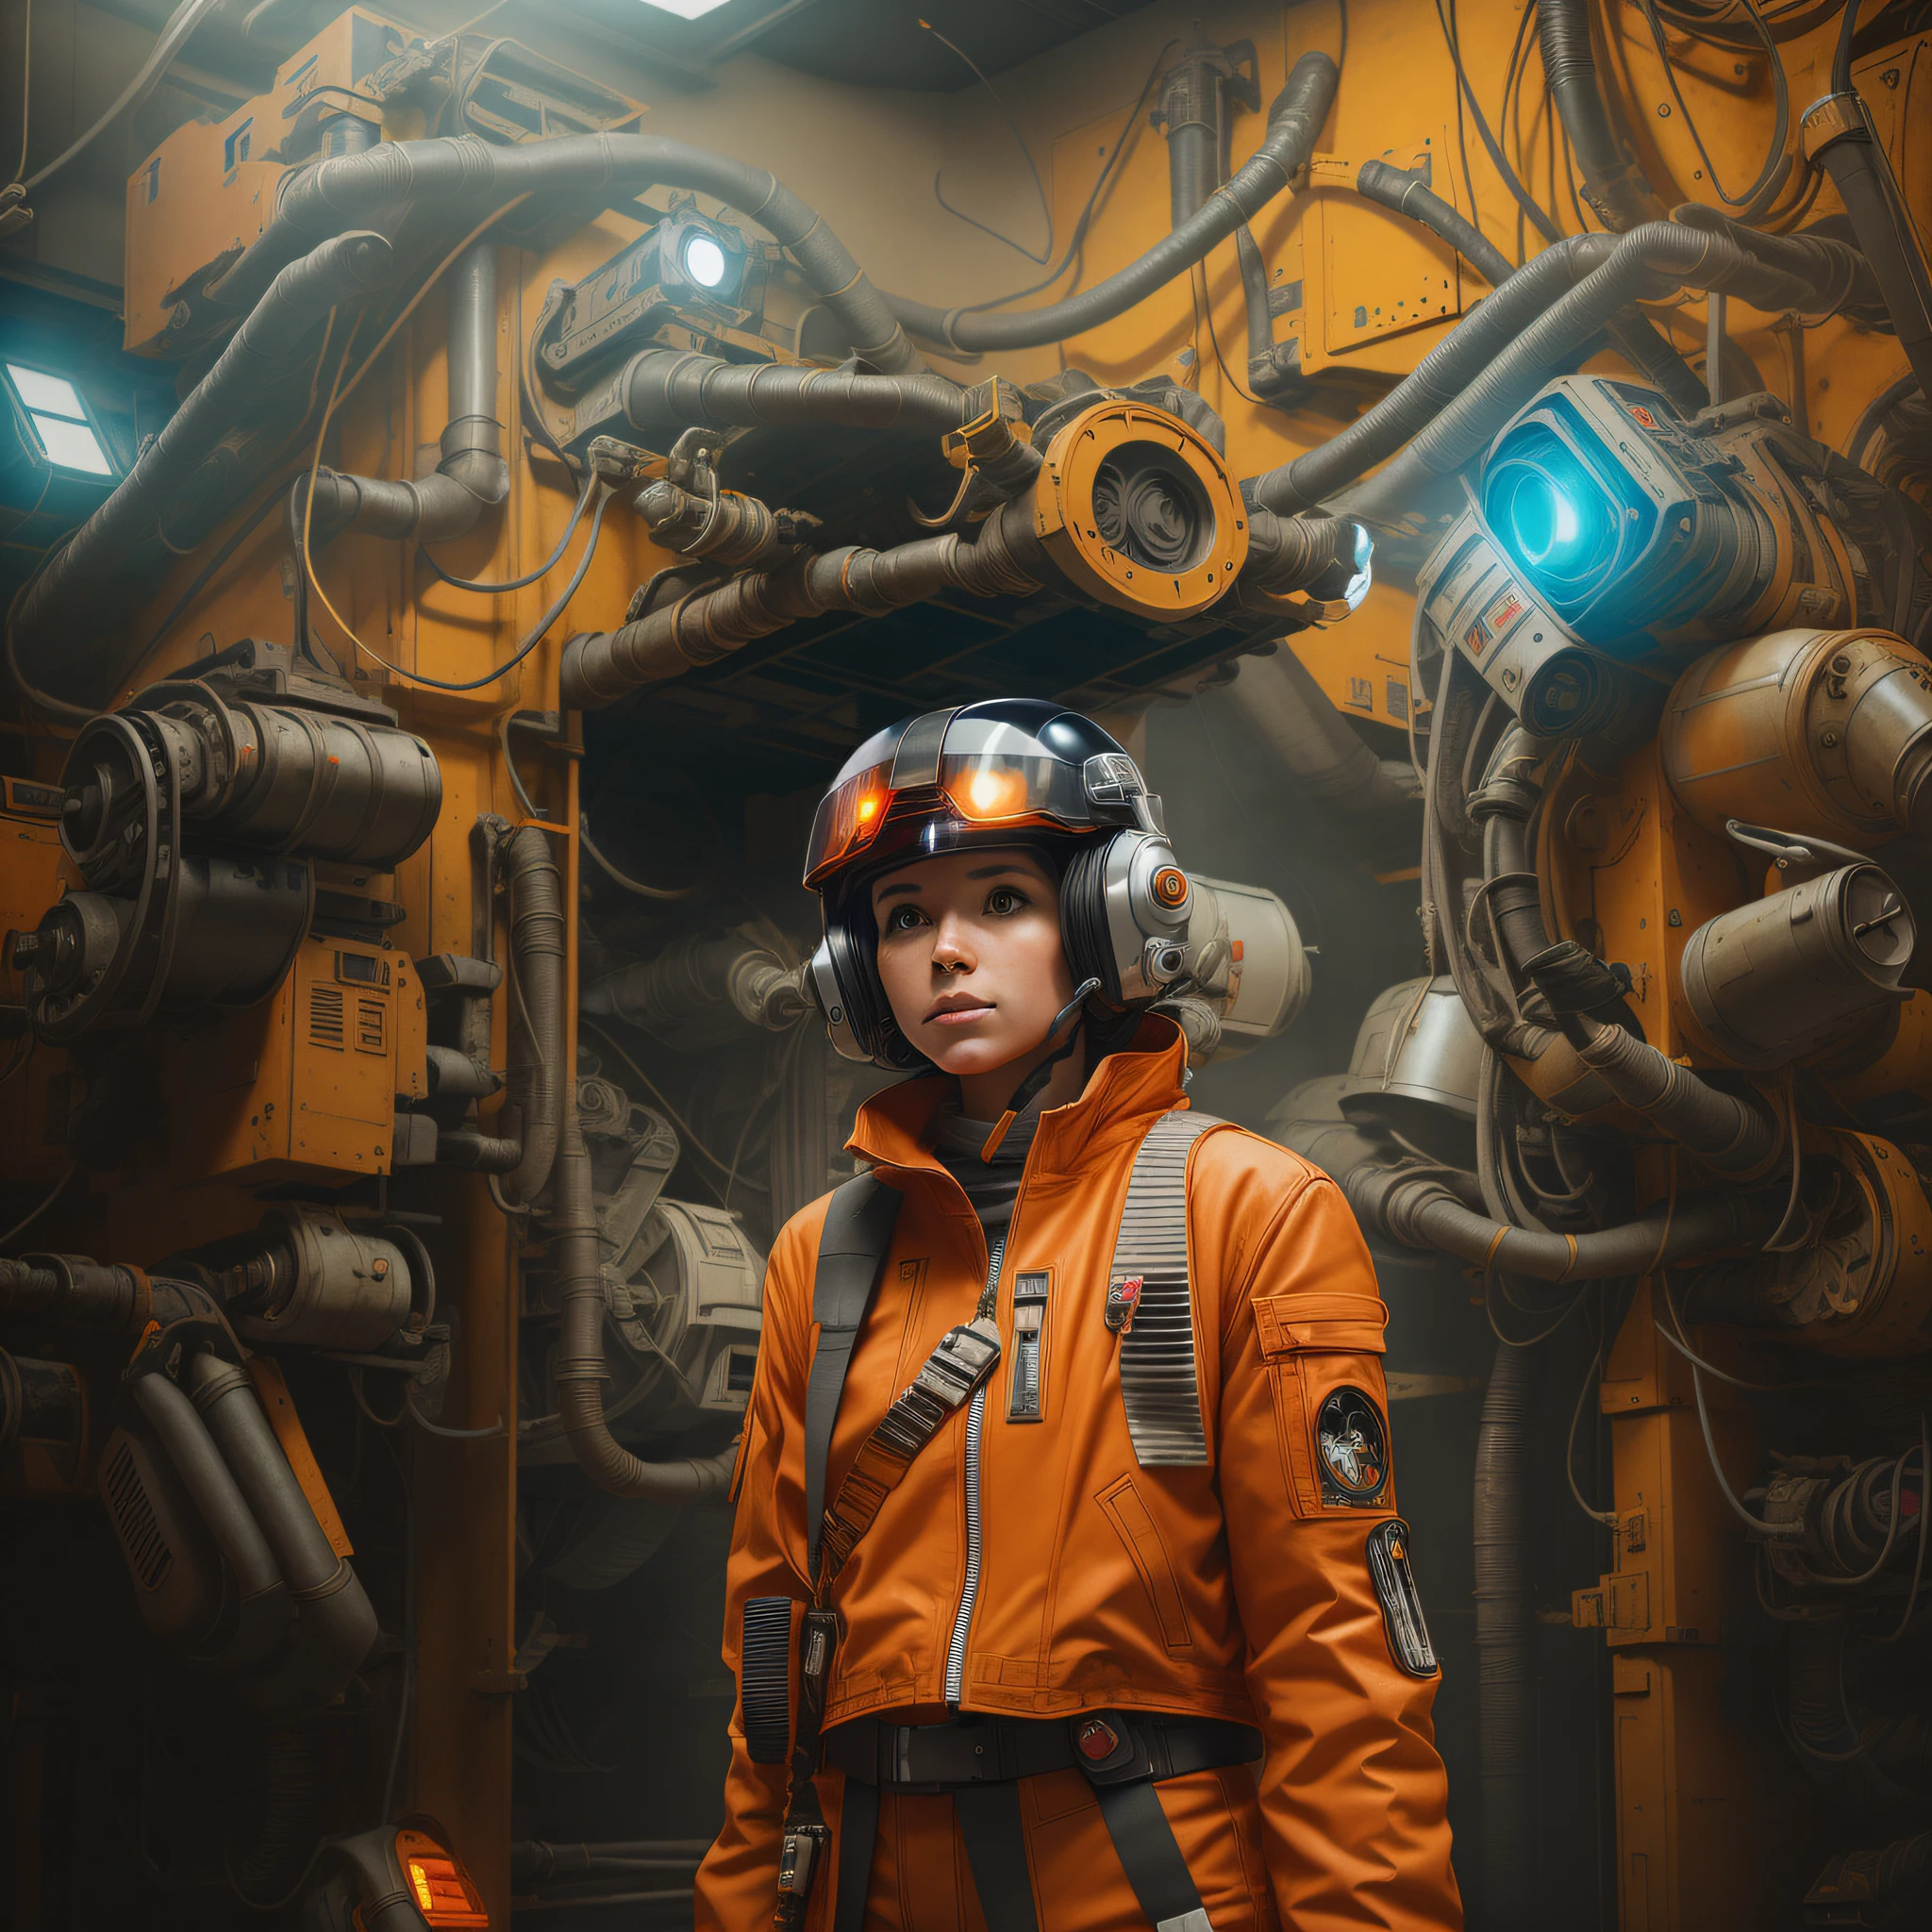 há uma mulher piloto de X-wing com uma jaqueta laranja e capacete parada em uma sala com muitas máquinas, Arte de Star Wars ultrarrealista 8k, aparência cinematográfica, retrato futurista garota piloto, estilo mistura híbrida de pessoas, garota cyberpunk sonhadora, garota com armadura cibernética mecha, retrato linda garota de ficção científica, filme de ficção científica